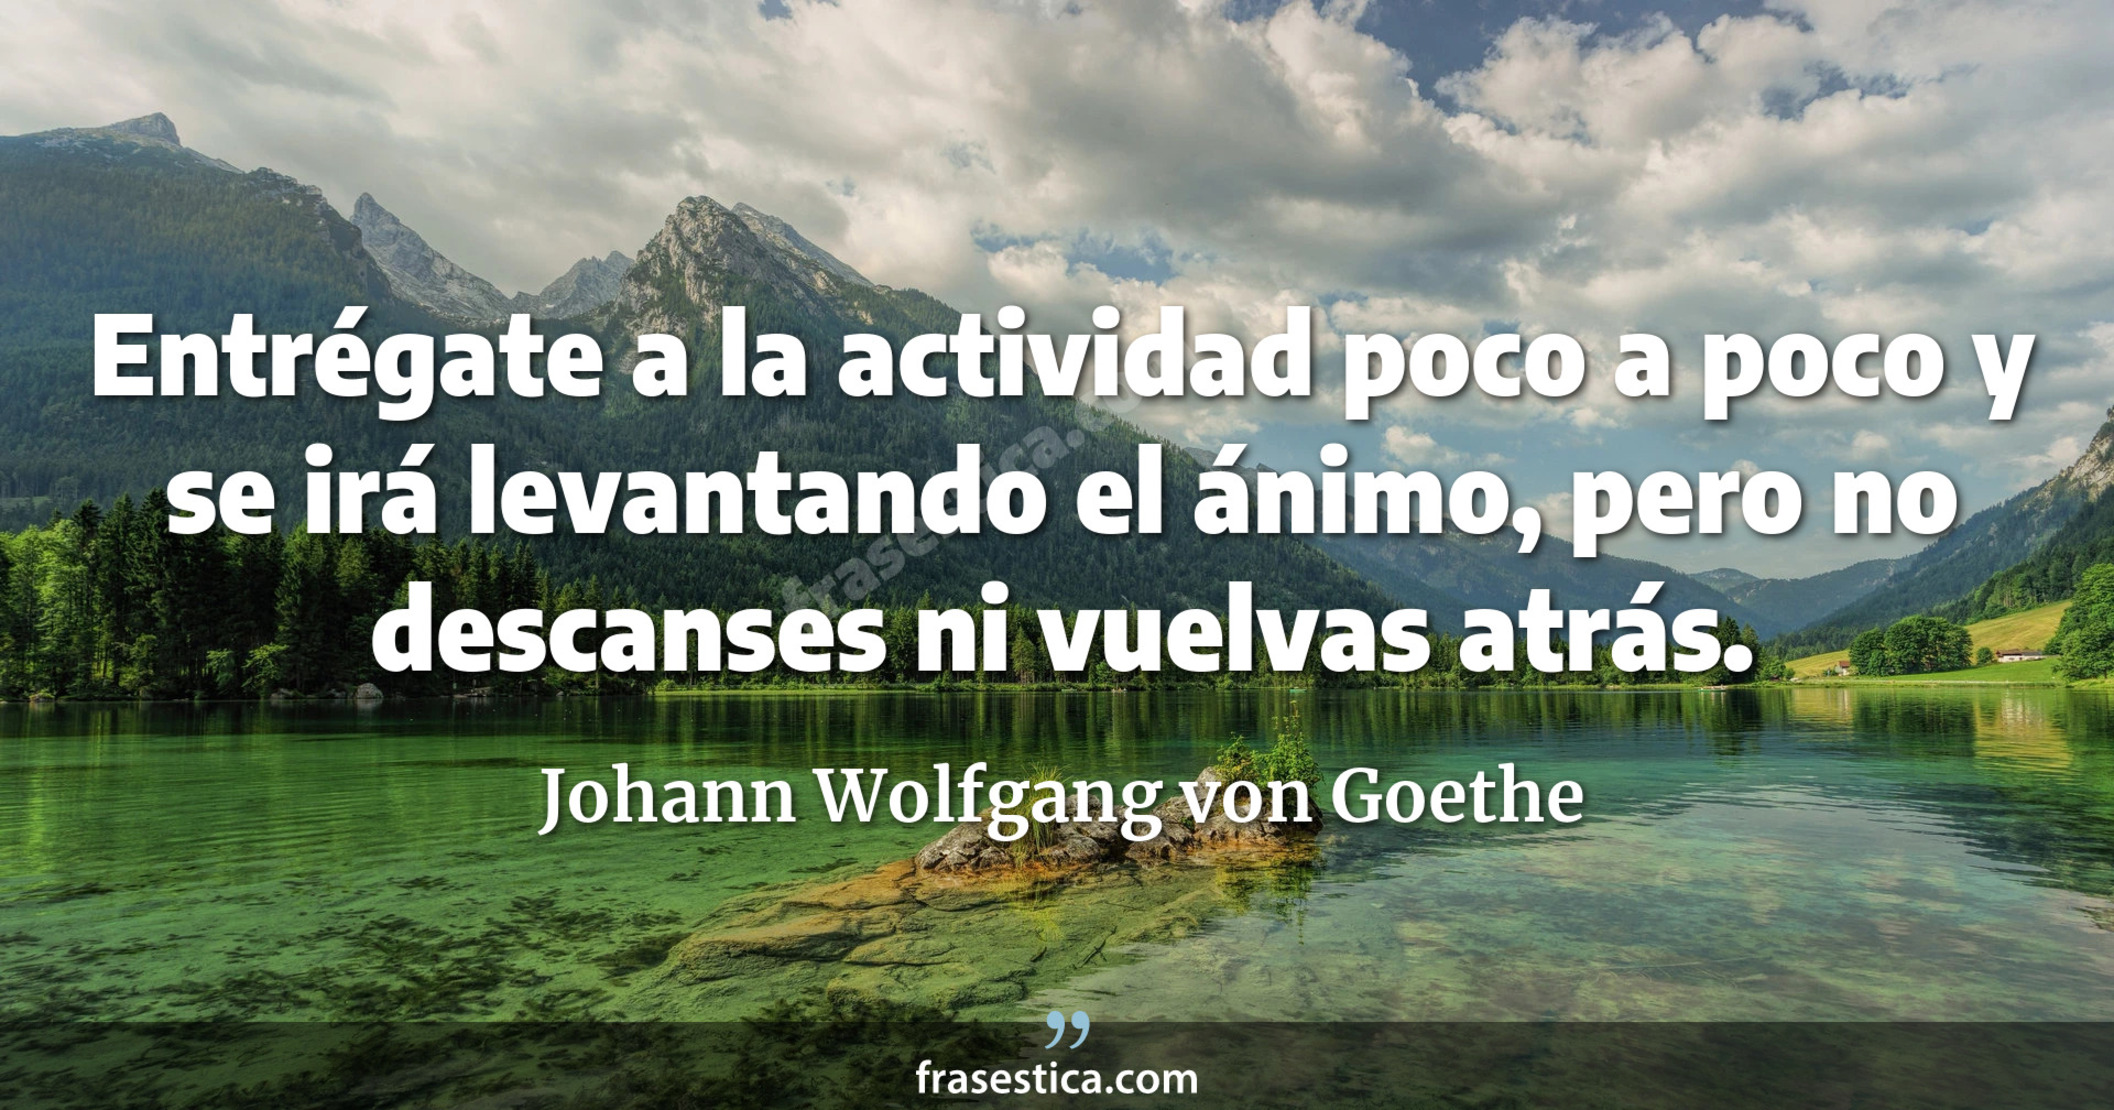 Entrégate a la actividad poco a poco y se irá levantando el ánimo, pero no descanses ni vuelvas atrás. - Johann Wolfgang von Goethe